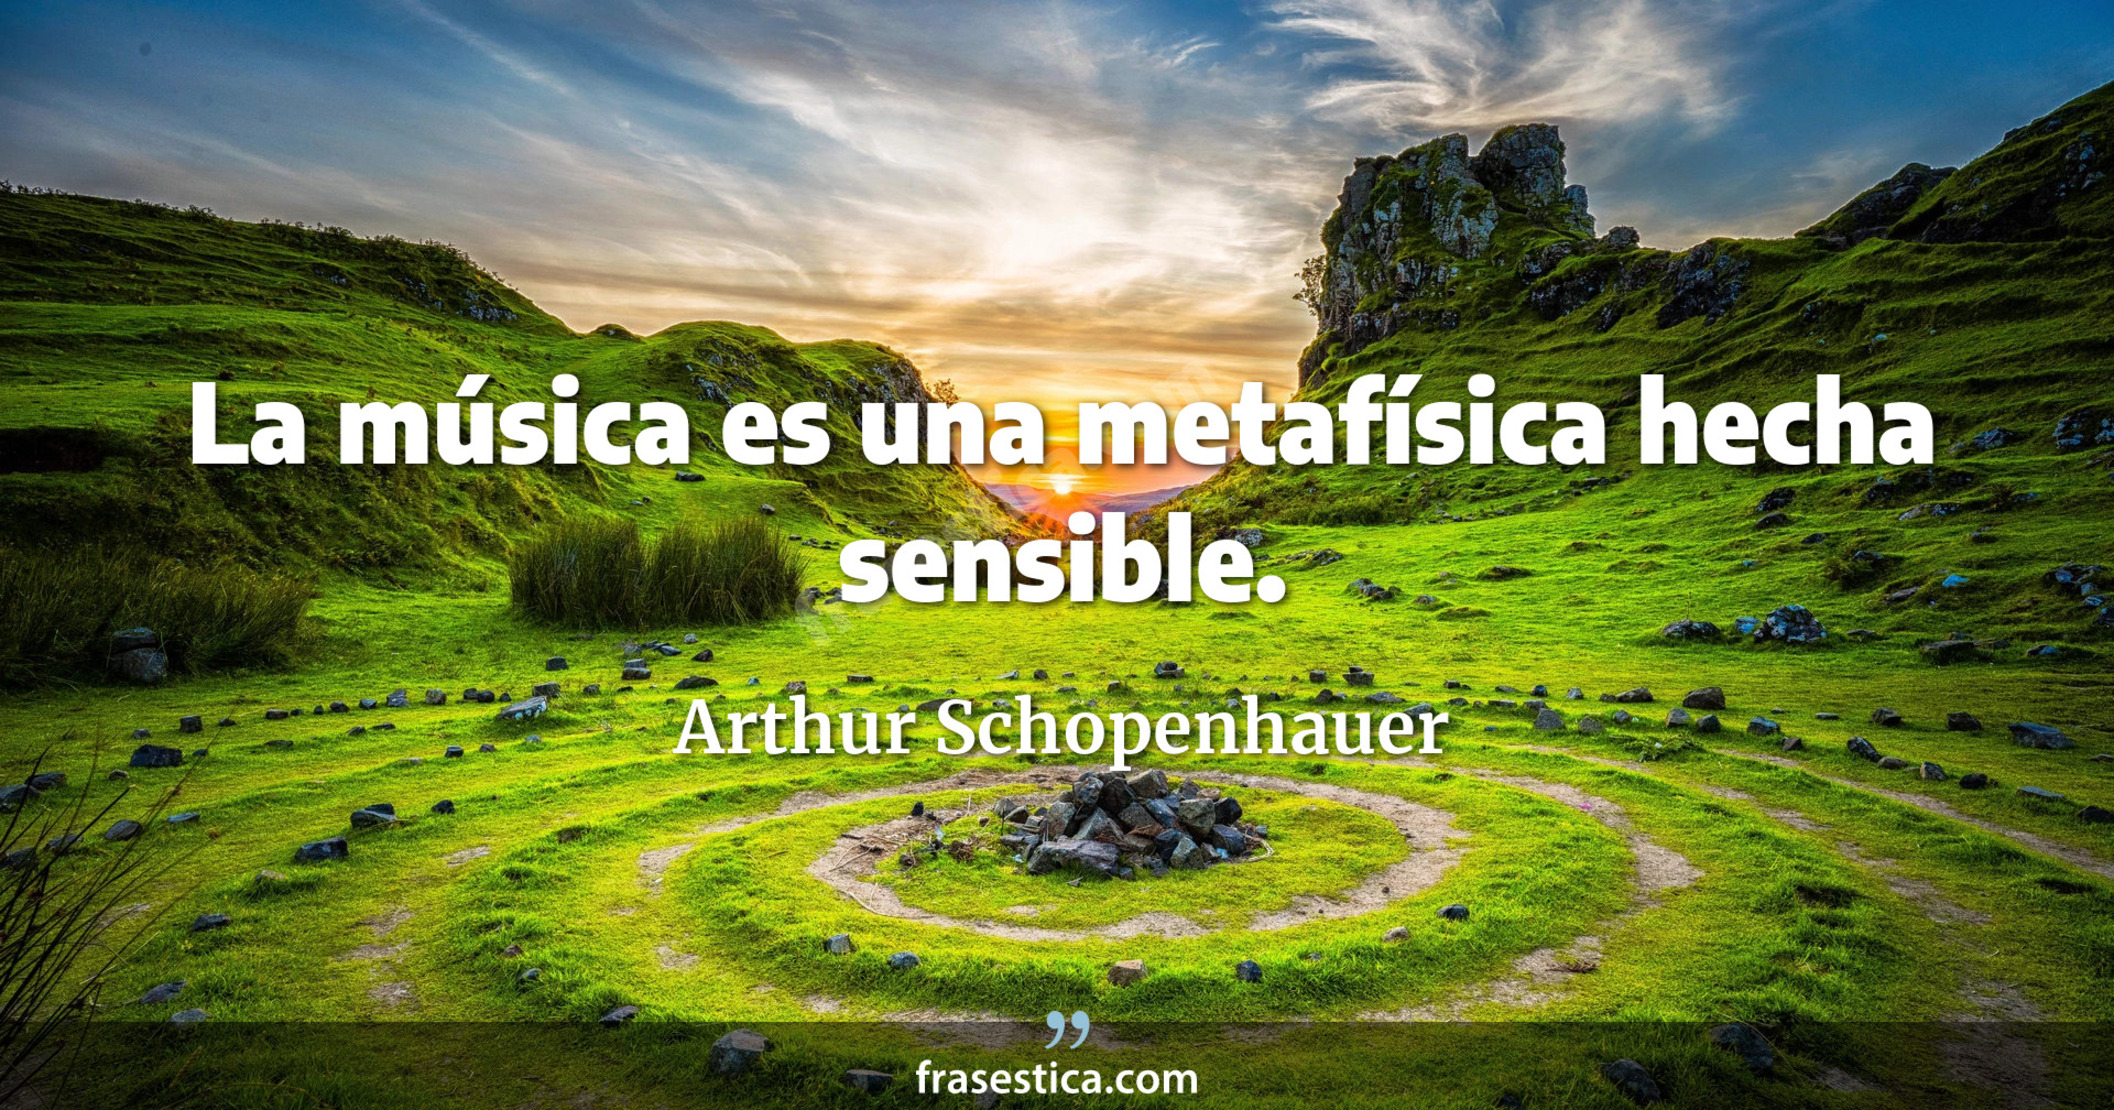 La música es una metafísica hecha sensible. - Arthur Schopenhauer